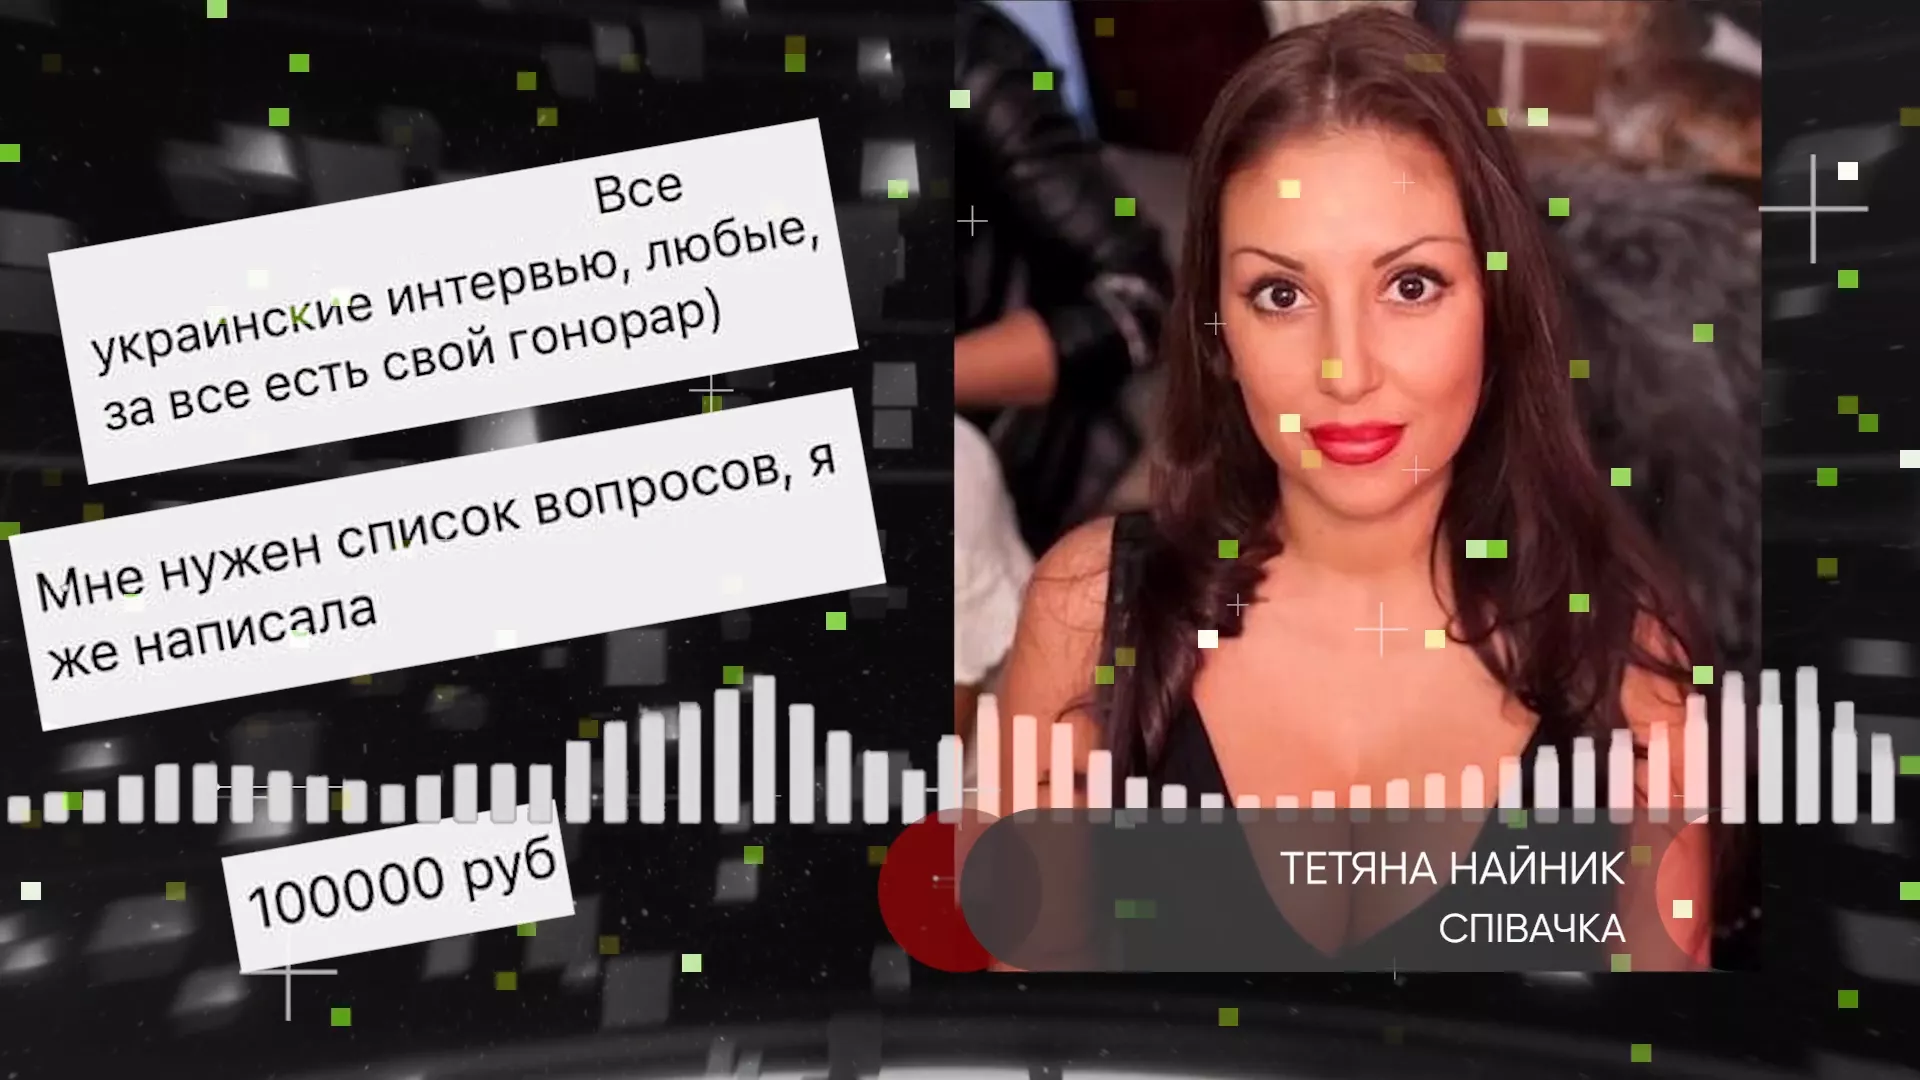 Тетяна Найник попросила гонорар за коментар про домагання Костянтина Меладзе